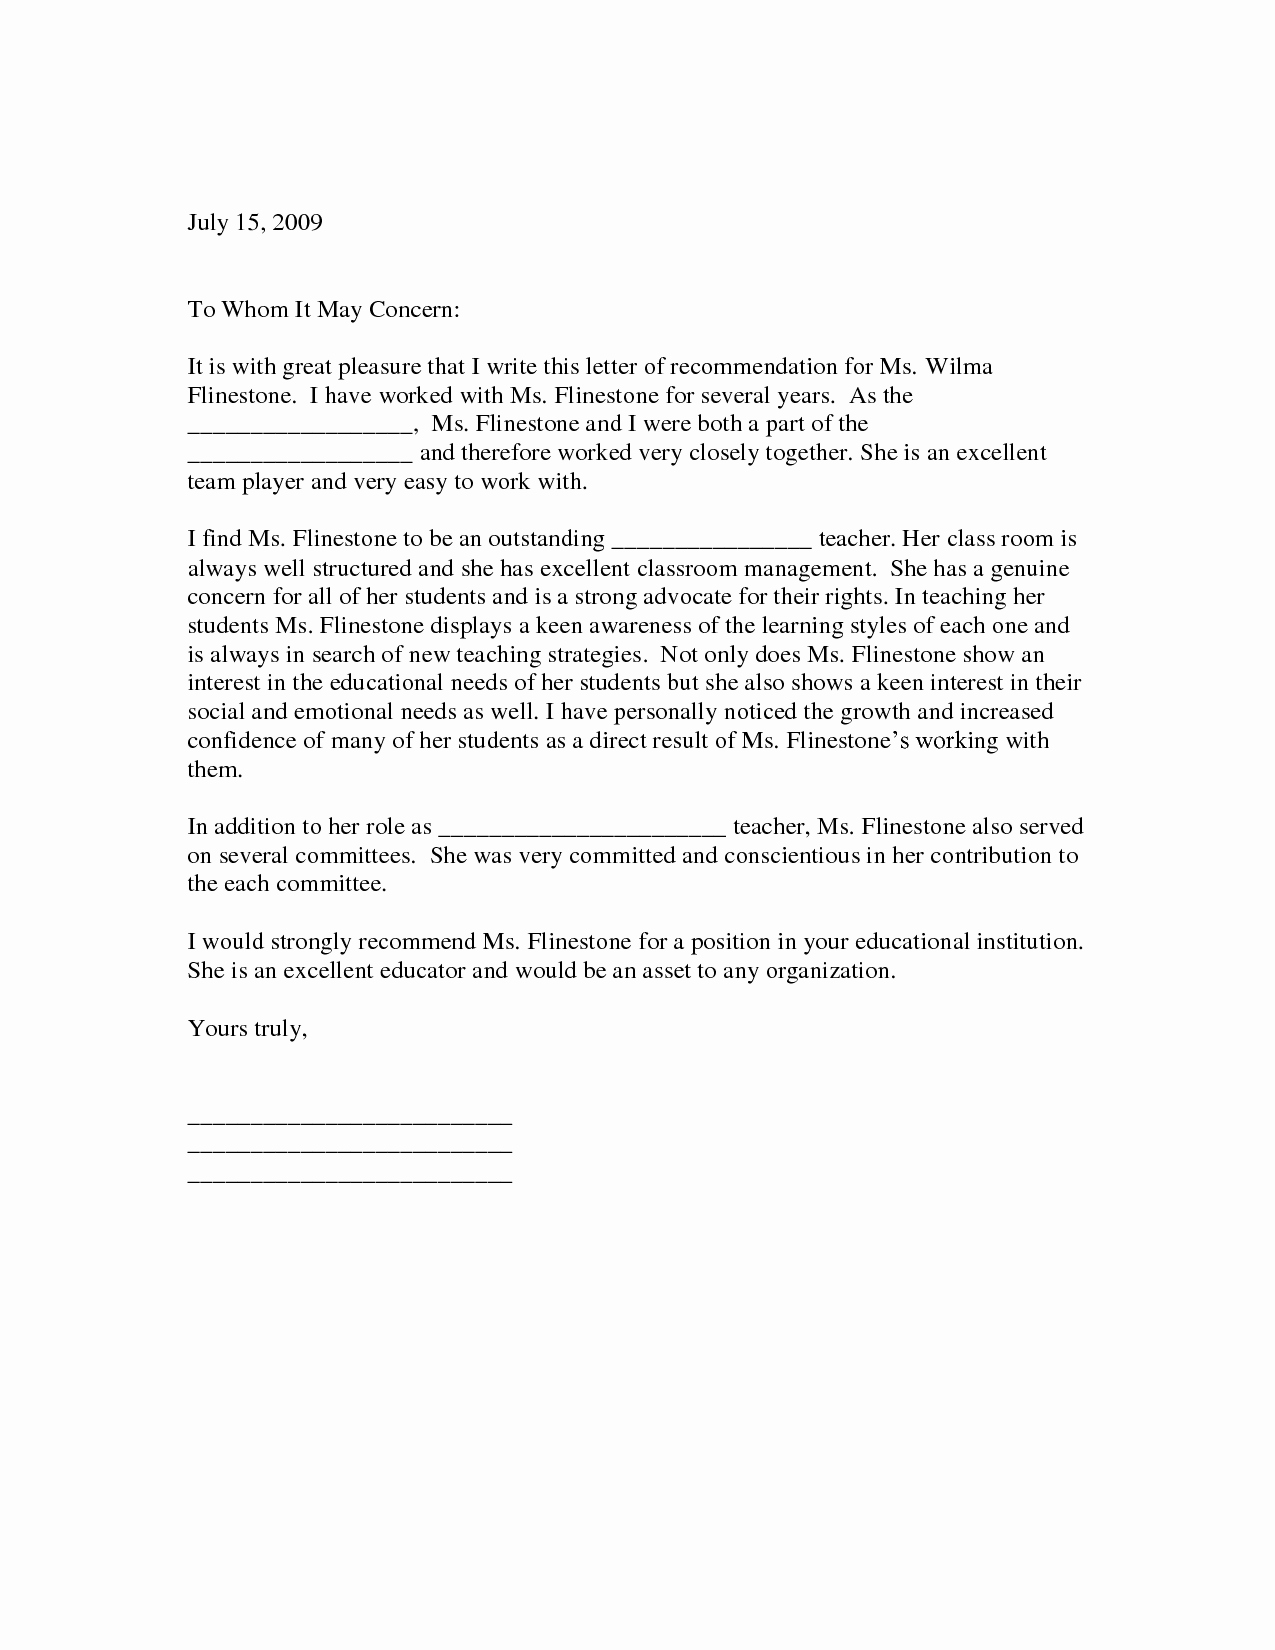 Sample Teacher Letter Of Recommendation Unique Sample Letter Of Re Mendation for Teacher